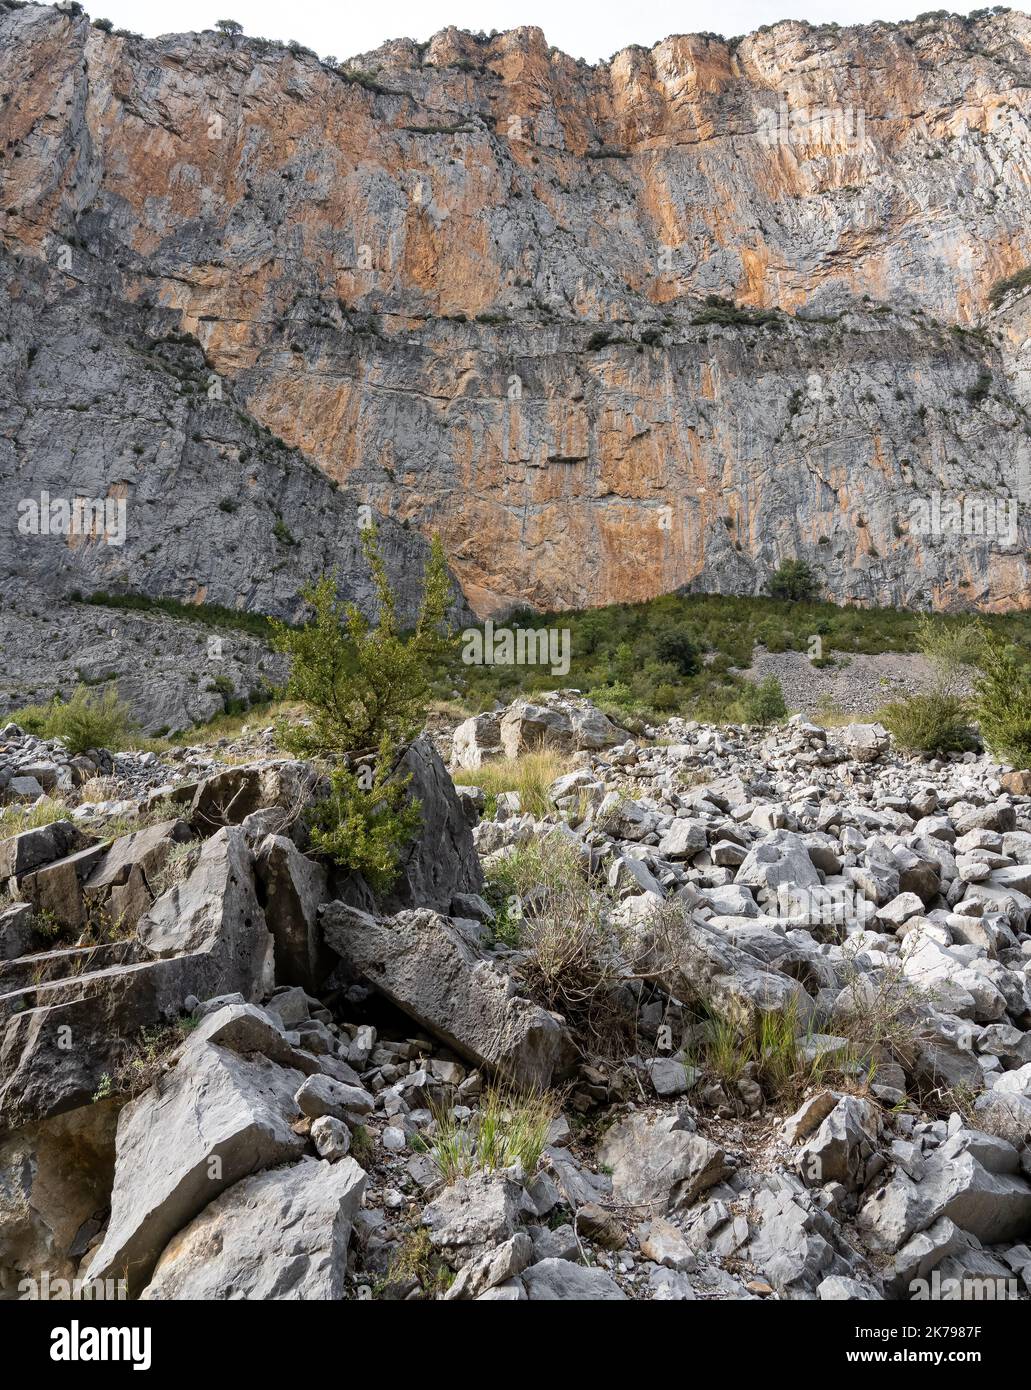 rochers et formations glaciaires, gorges et canyons dans les montagnes, en Espagne Banque D'Images